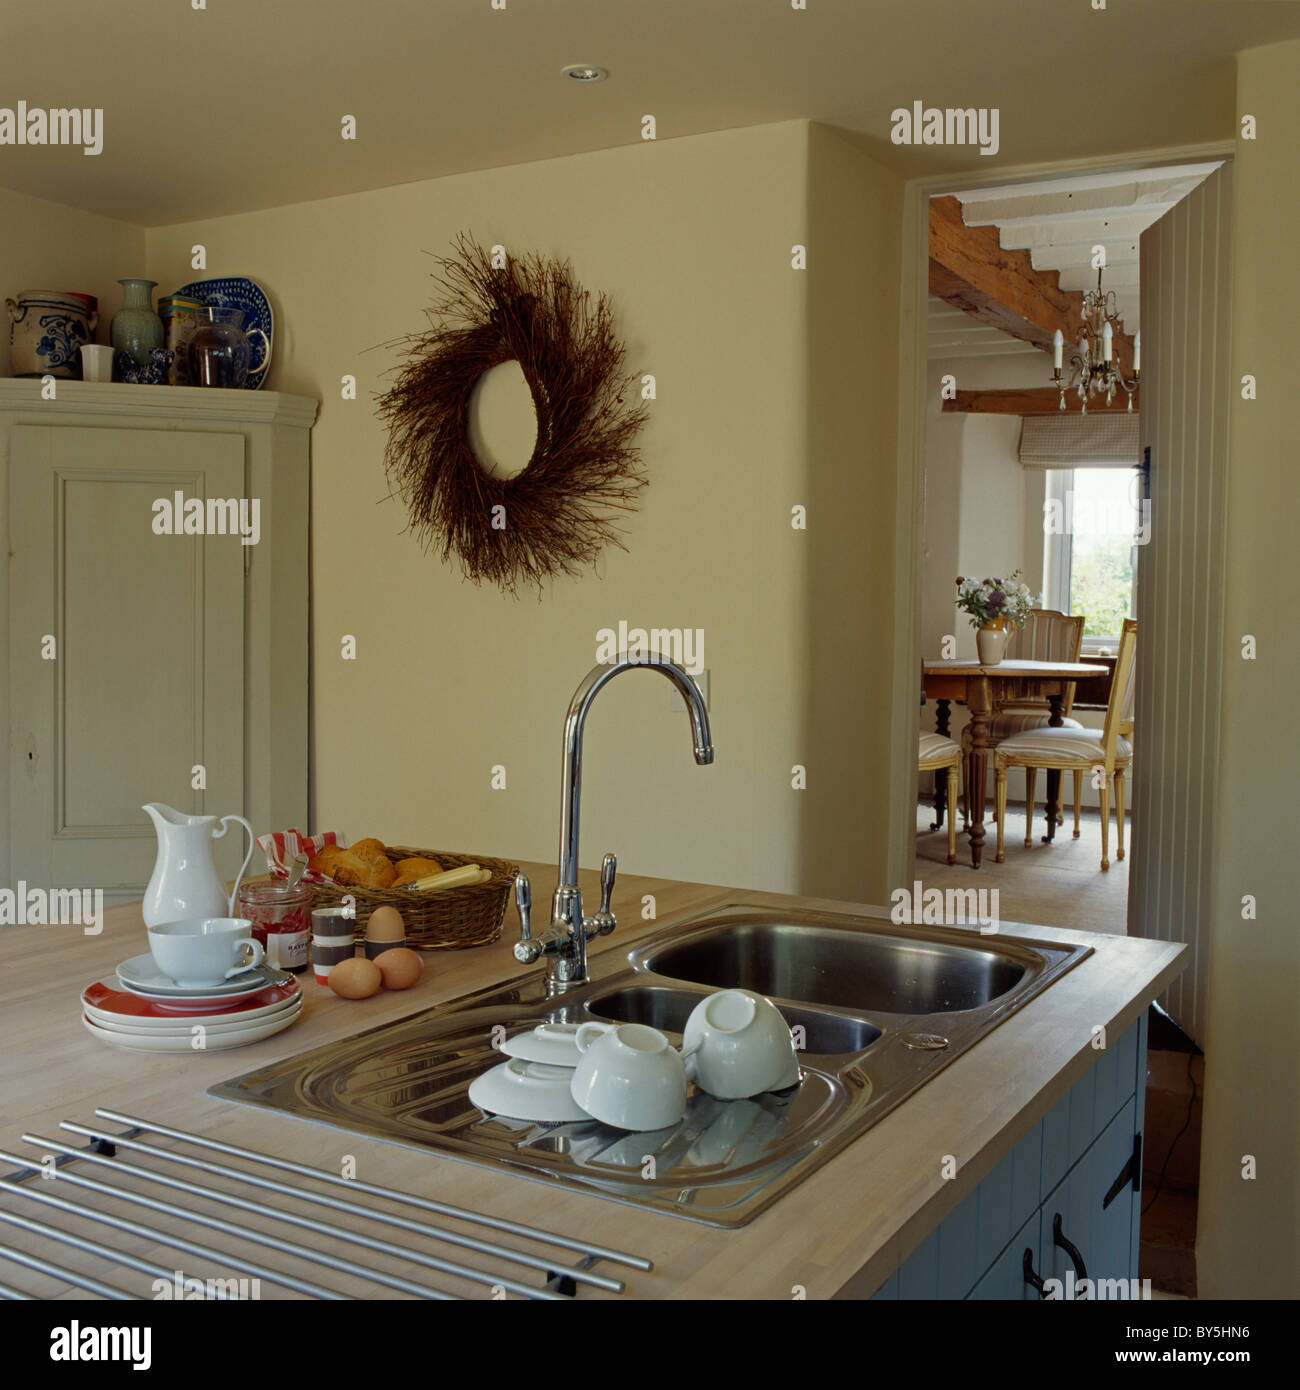 Weißes Geschirr auf Abtropffläche Edelstahl-Spüle mit Mischbatterie in  Creme Cottage-Küche mit rustikalen Kranz an der Wand Stockfotografie - Alamy